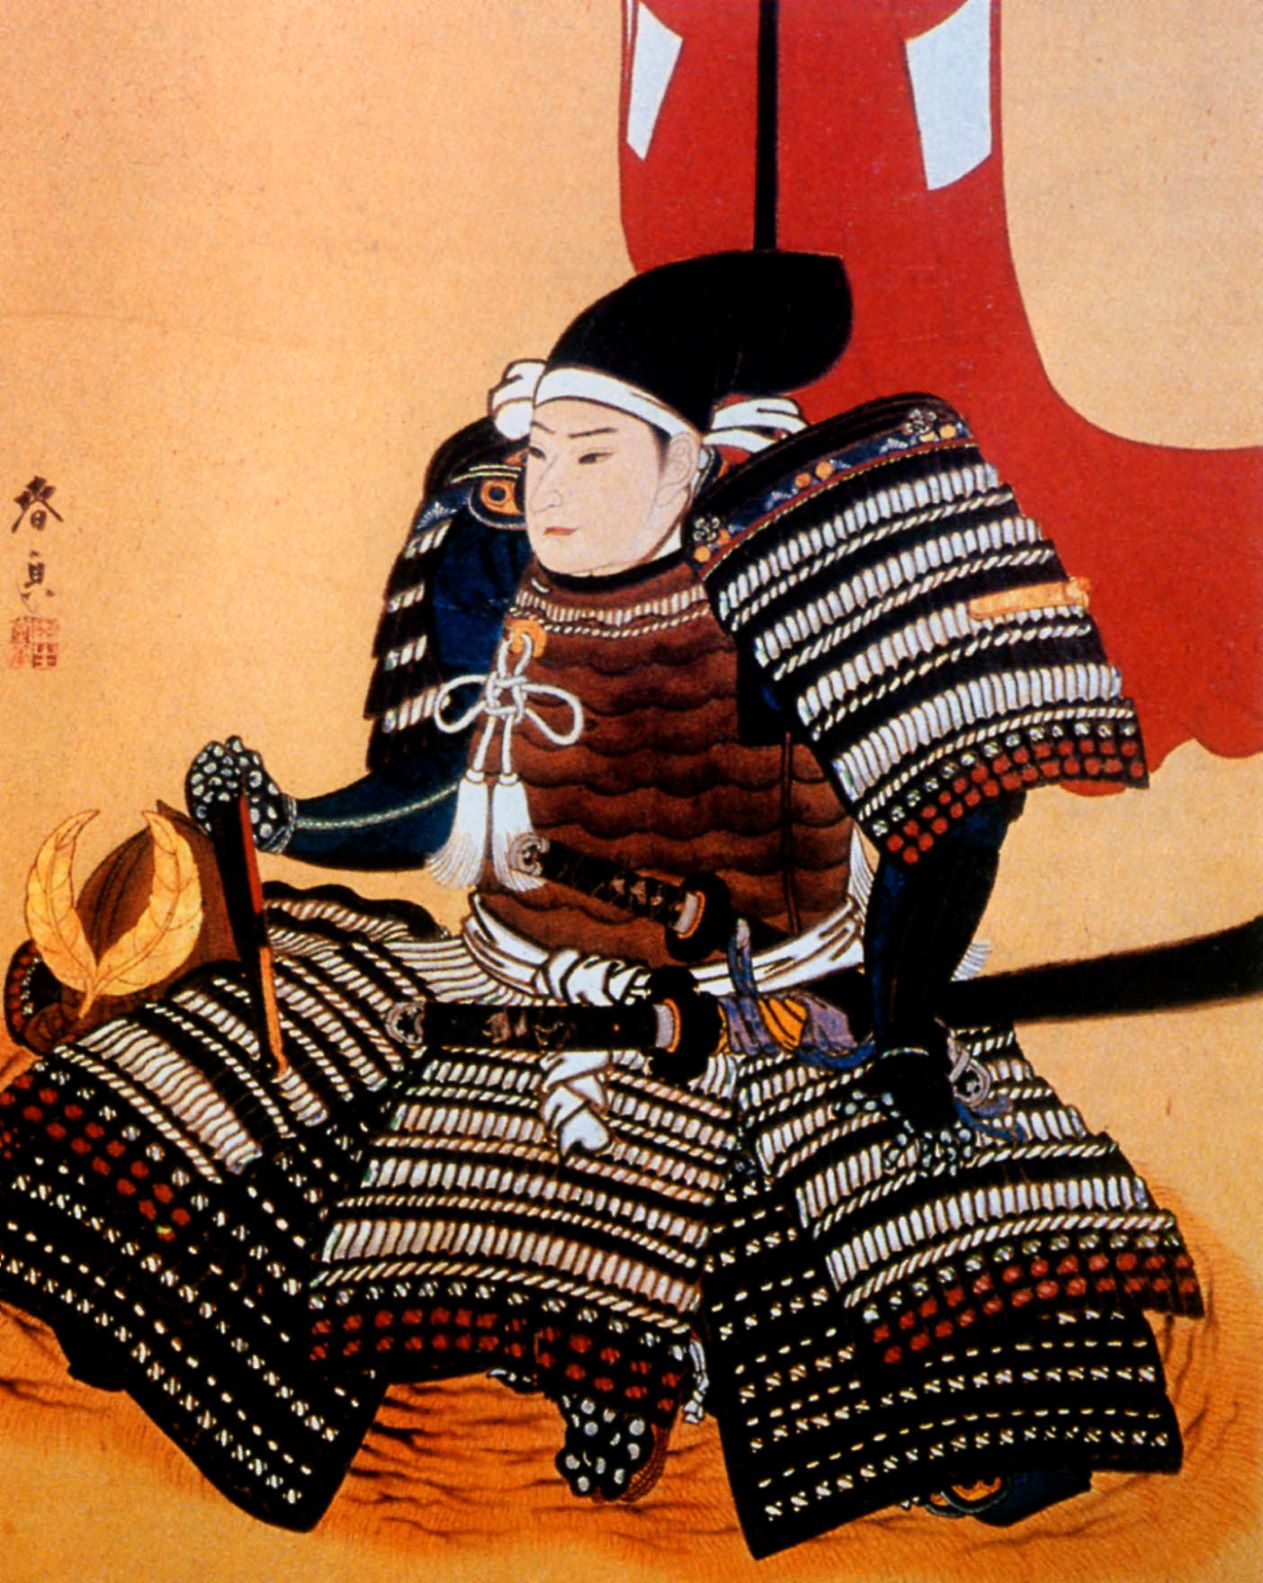 松平容保は正之の遺言を守り、京都守護職を務めるなど幕政に身を捧げました